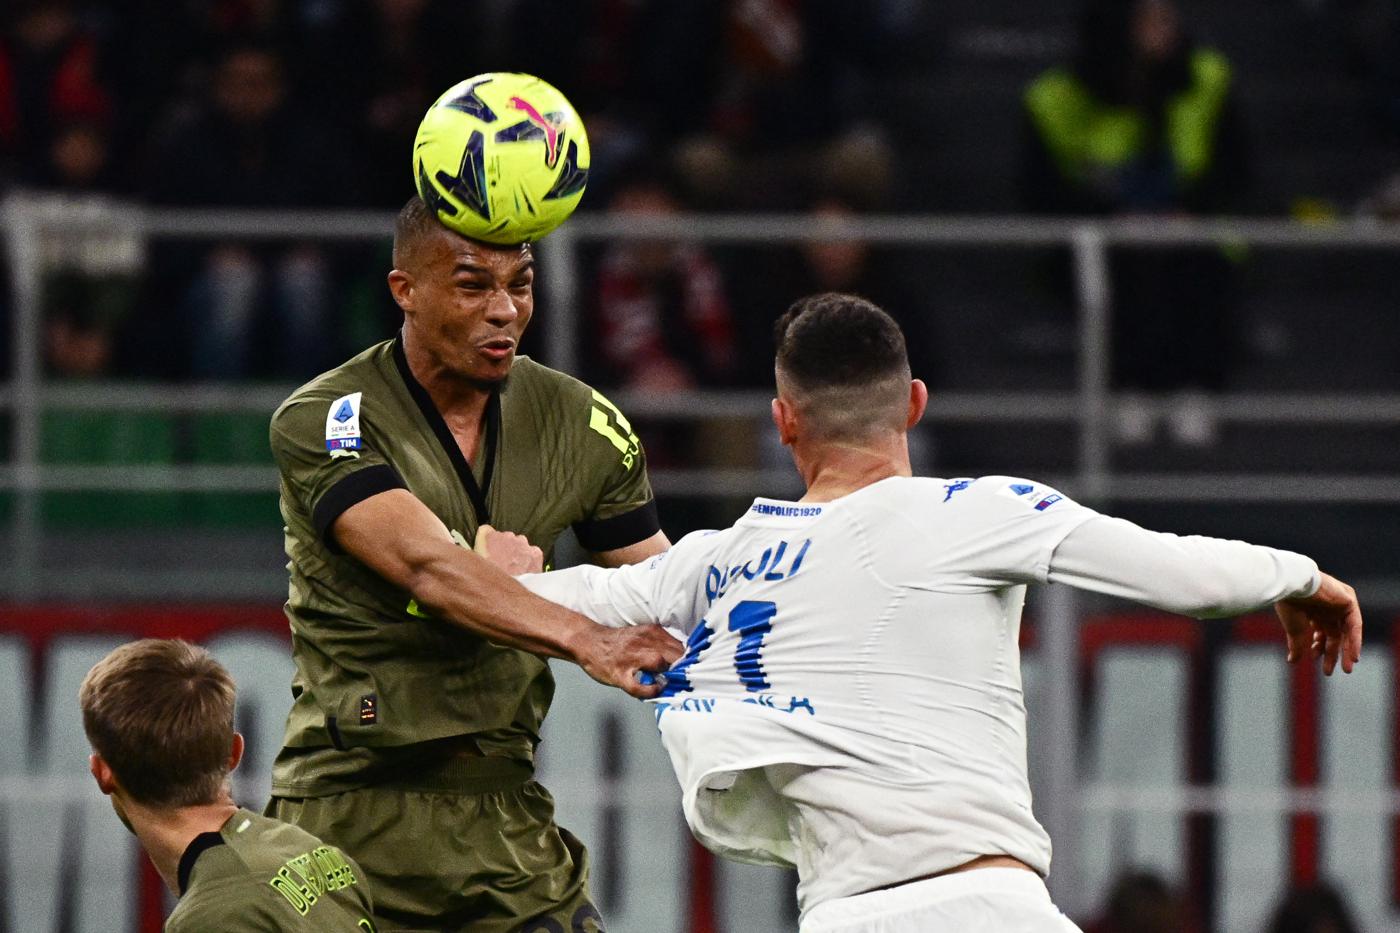 AC Milan v Empoli - 0-0. Mistrzostwa Włoch, mecz 29 kolejki. Przegląd meczów, statystyki